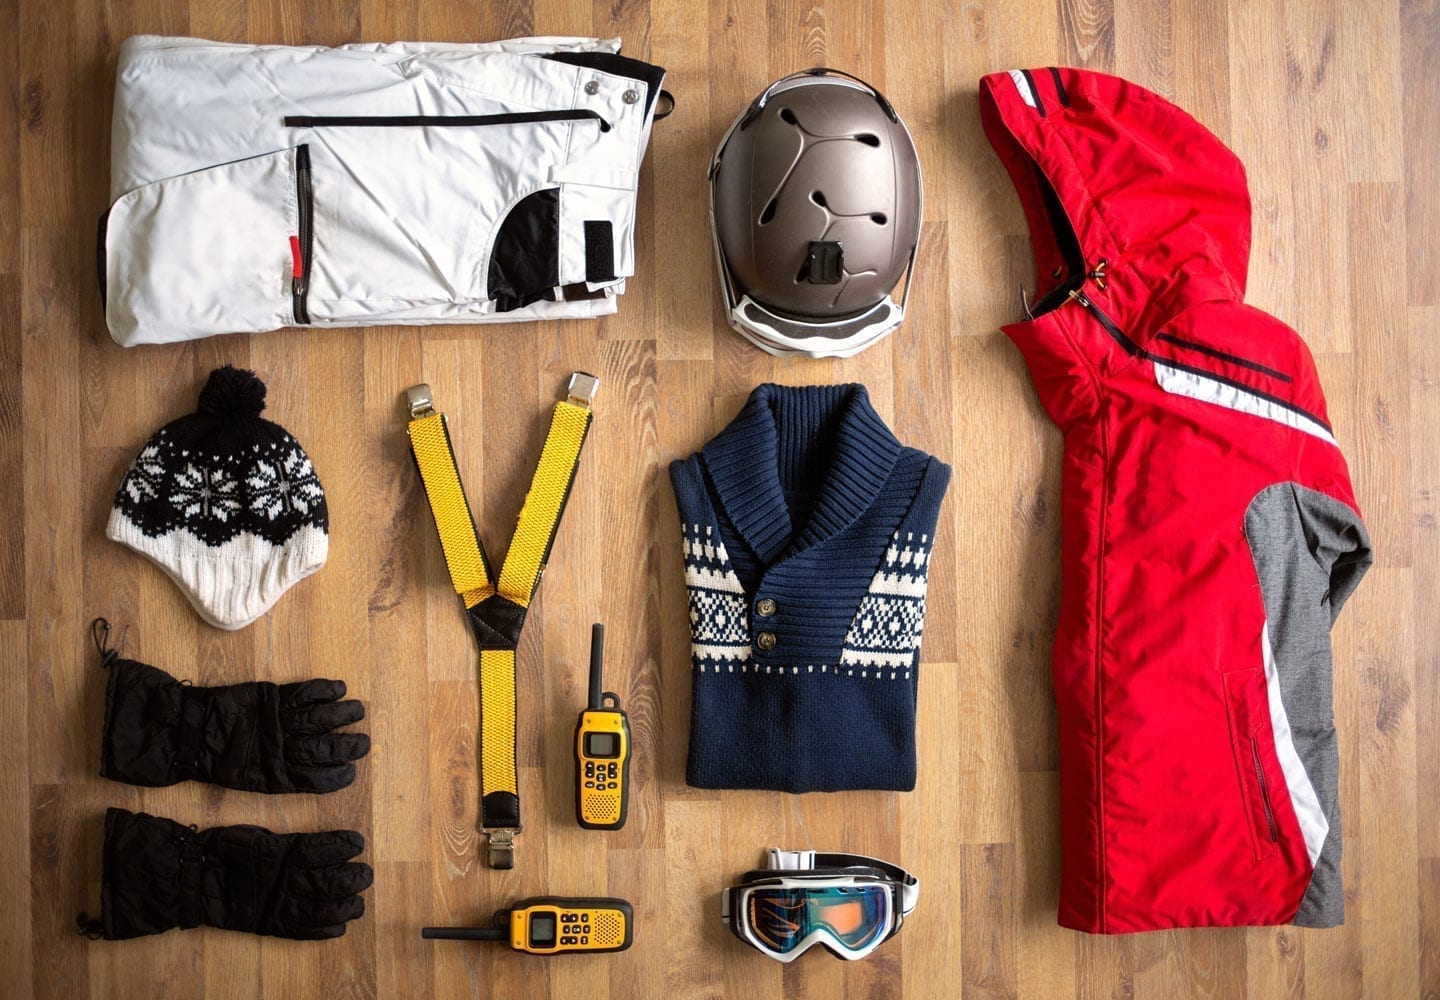 Ski gear spread out on a hardwood floor